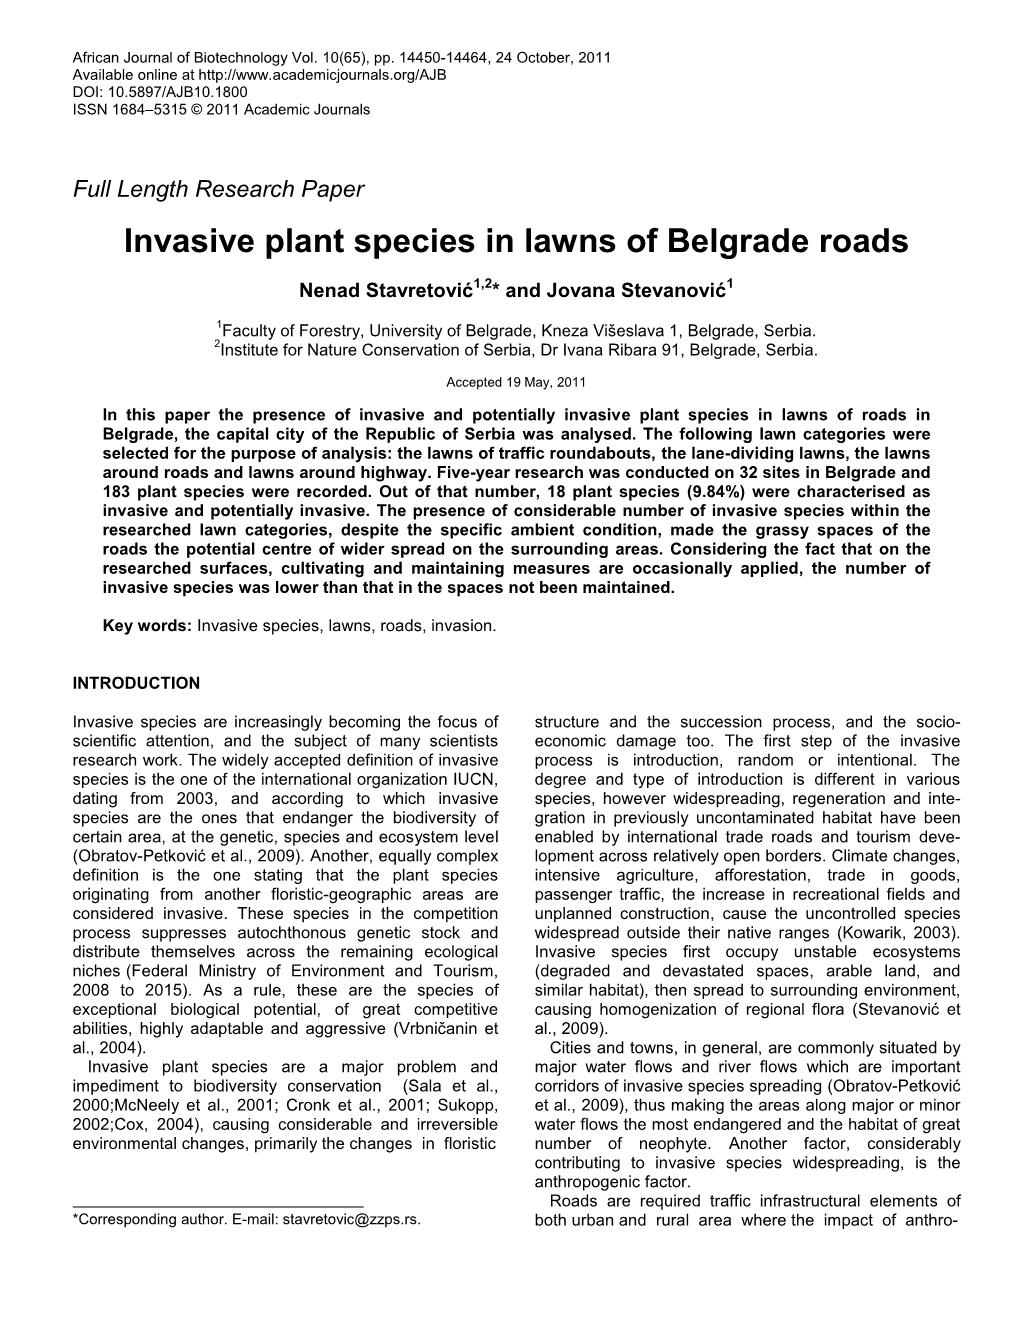 Invasive Plant Species in Lawns of Belgrade Roads